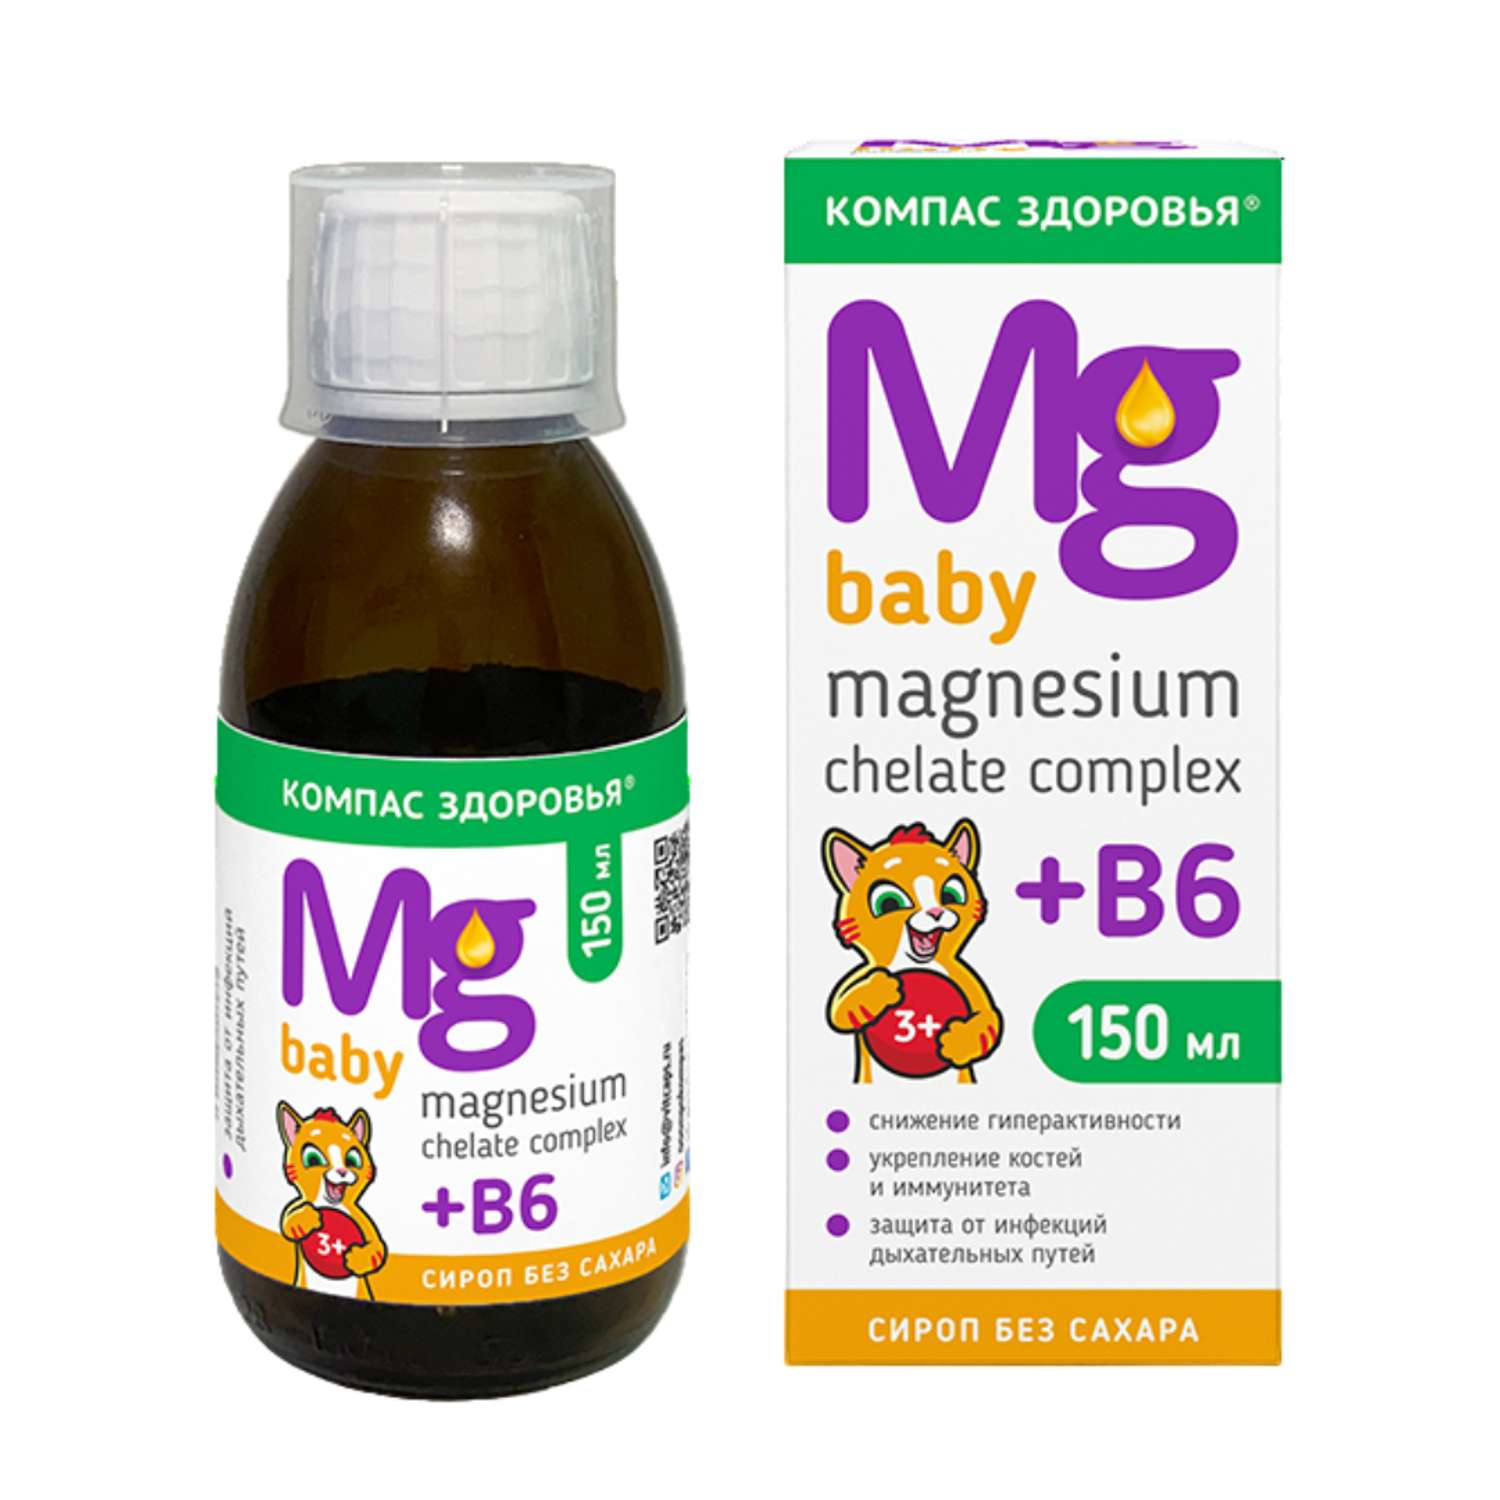 Биологически активная добавка Компас Здоровья магнезиум хелат комплекс +В6 детский 150 мл - фото 1